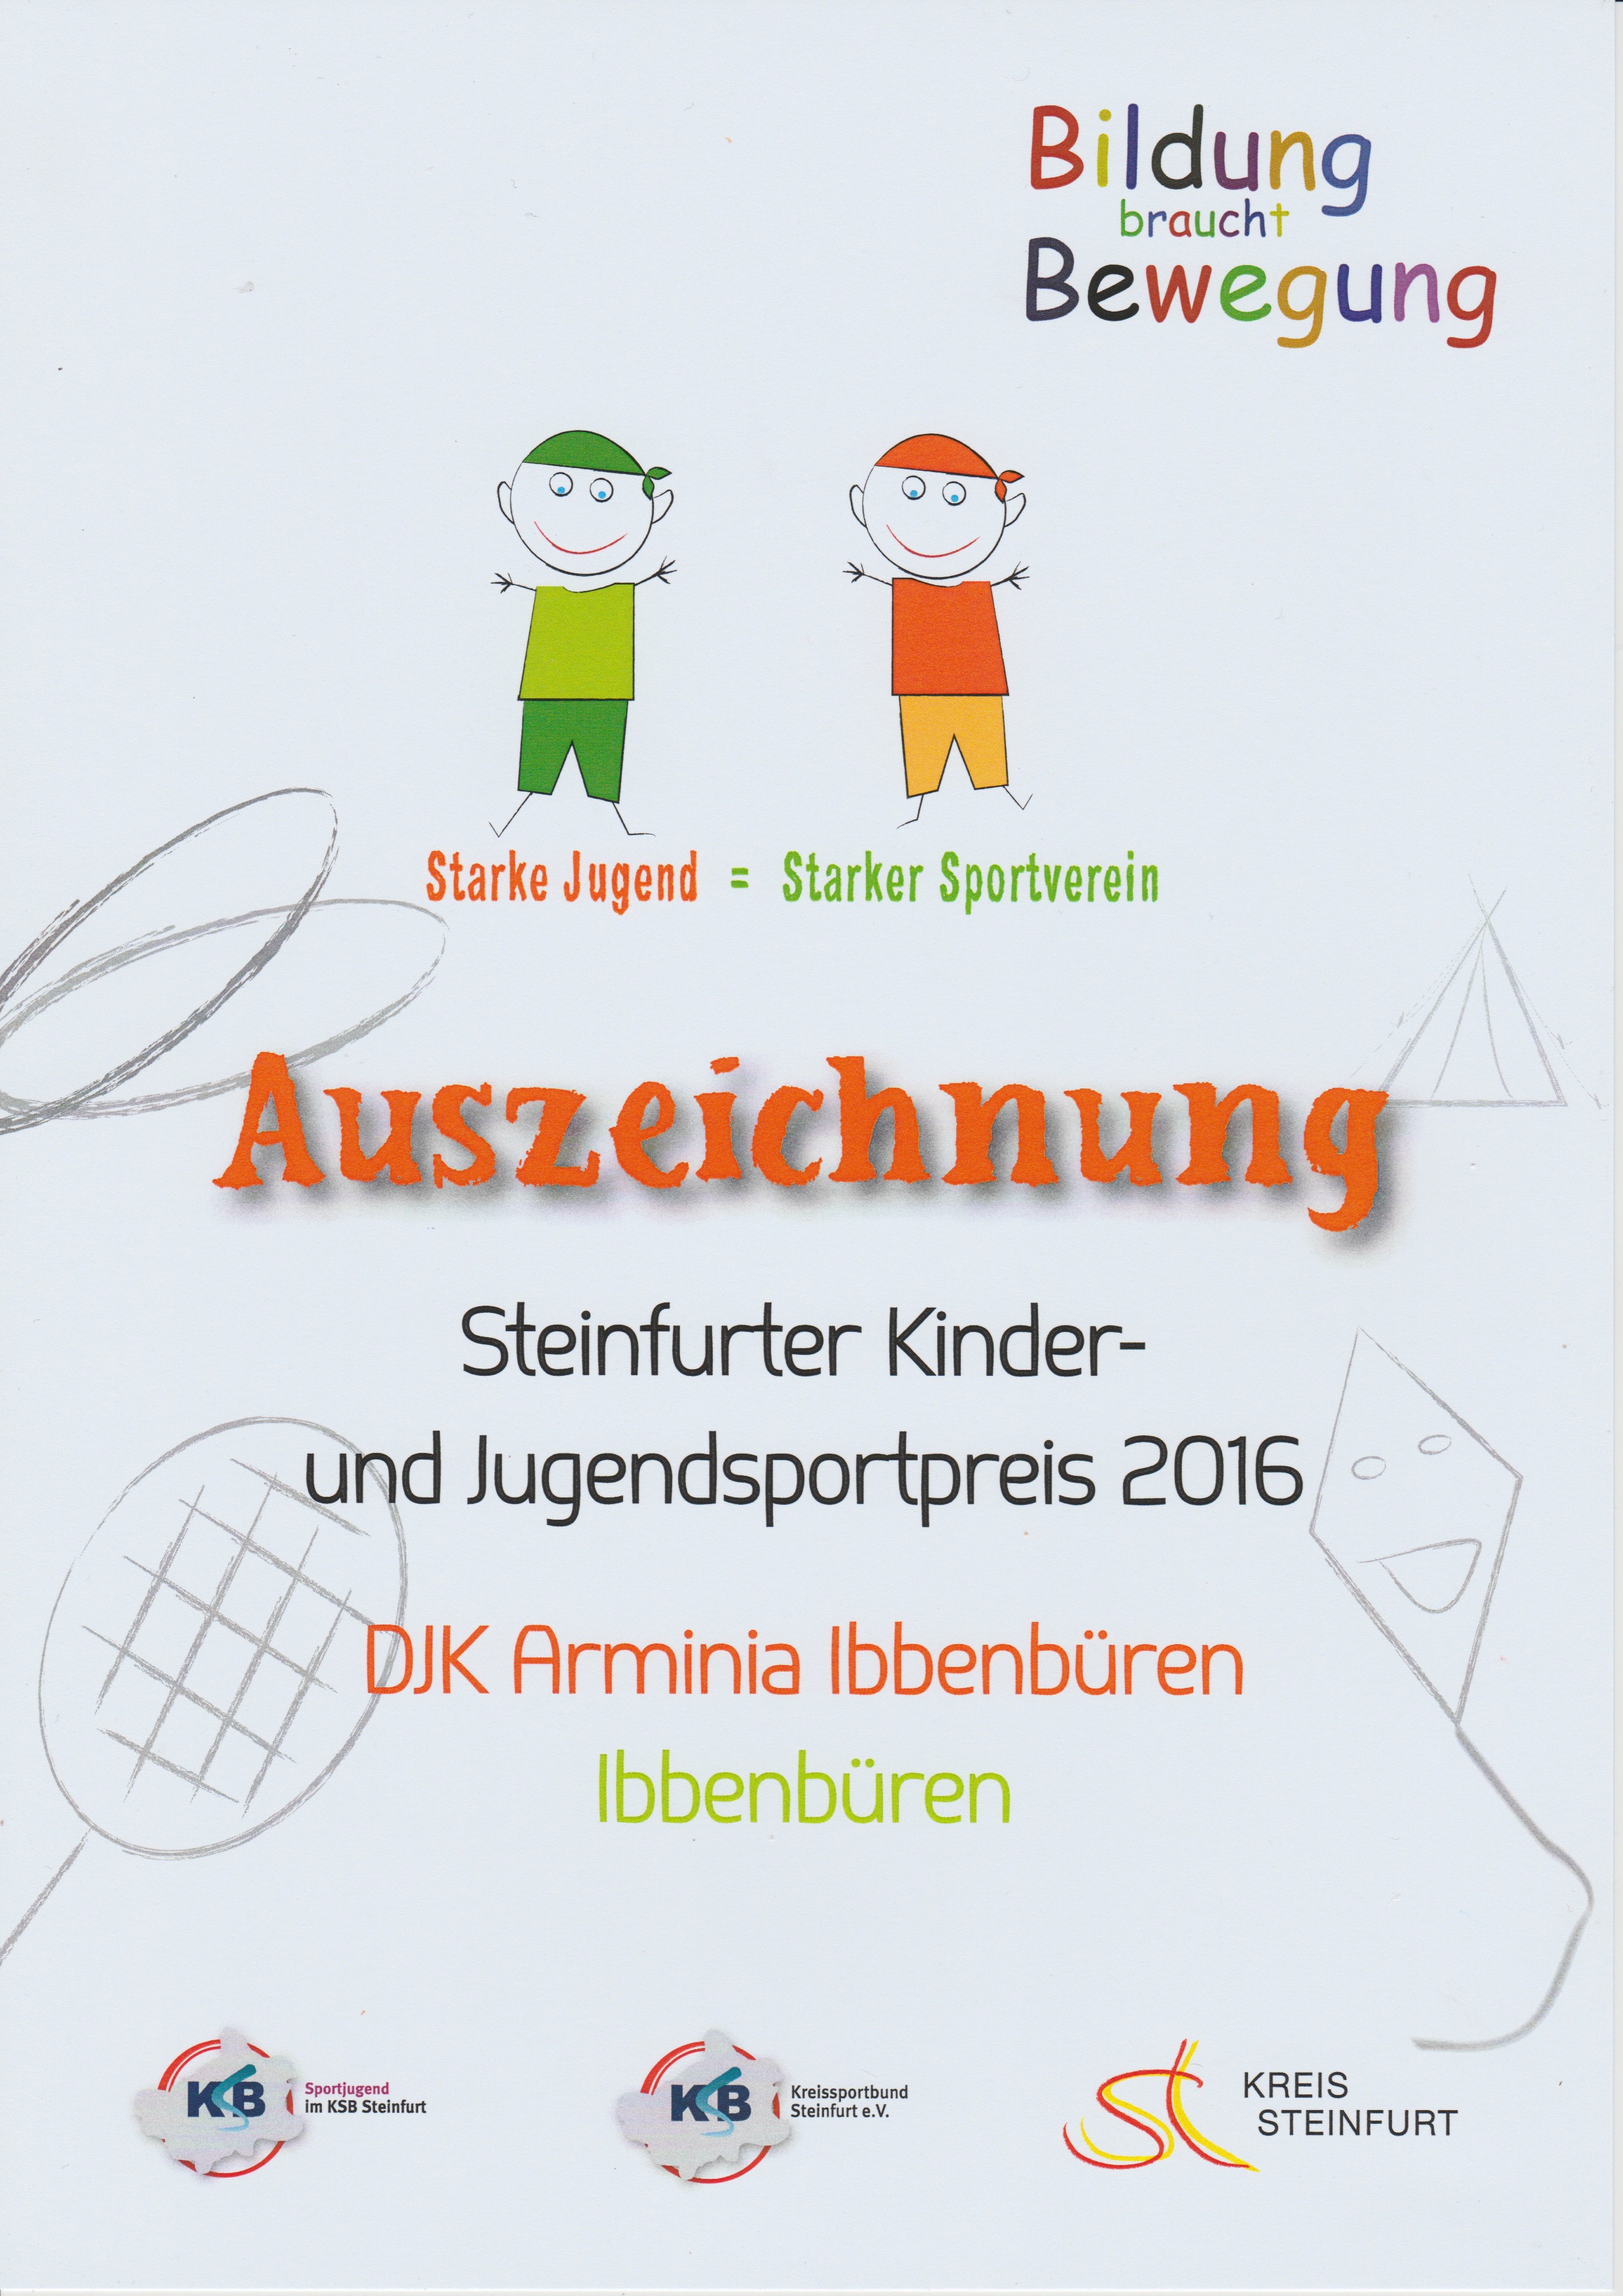 Steinfurter Kinder- und Jugendpreis 2016